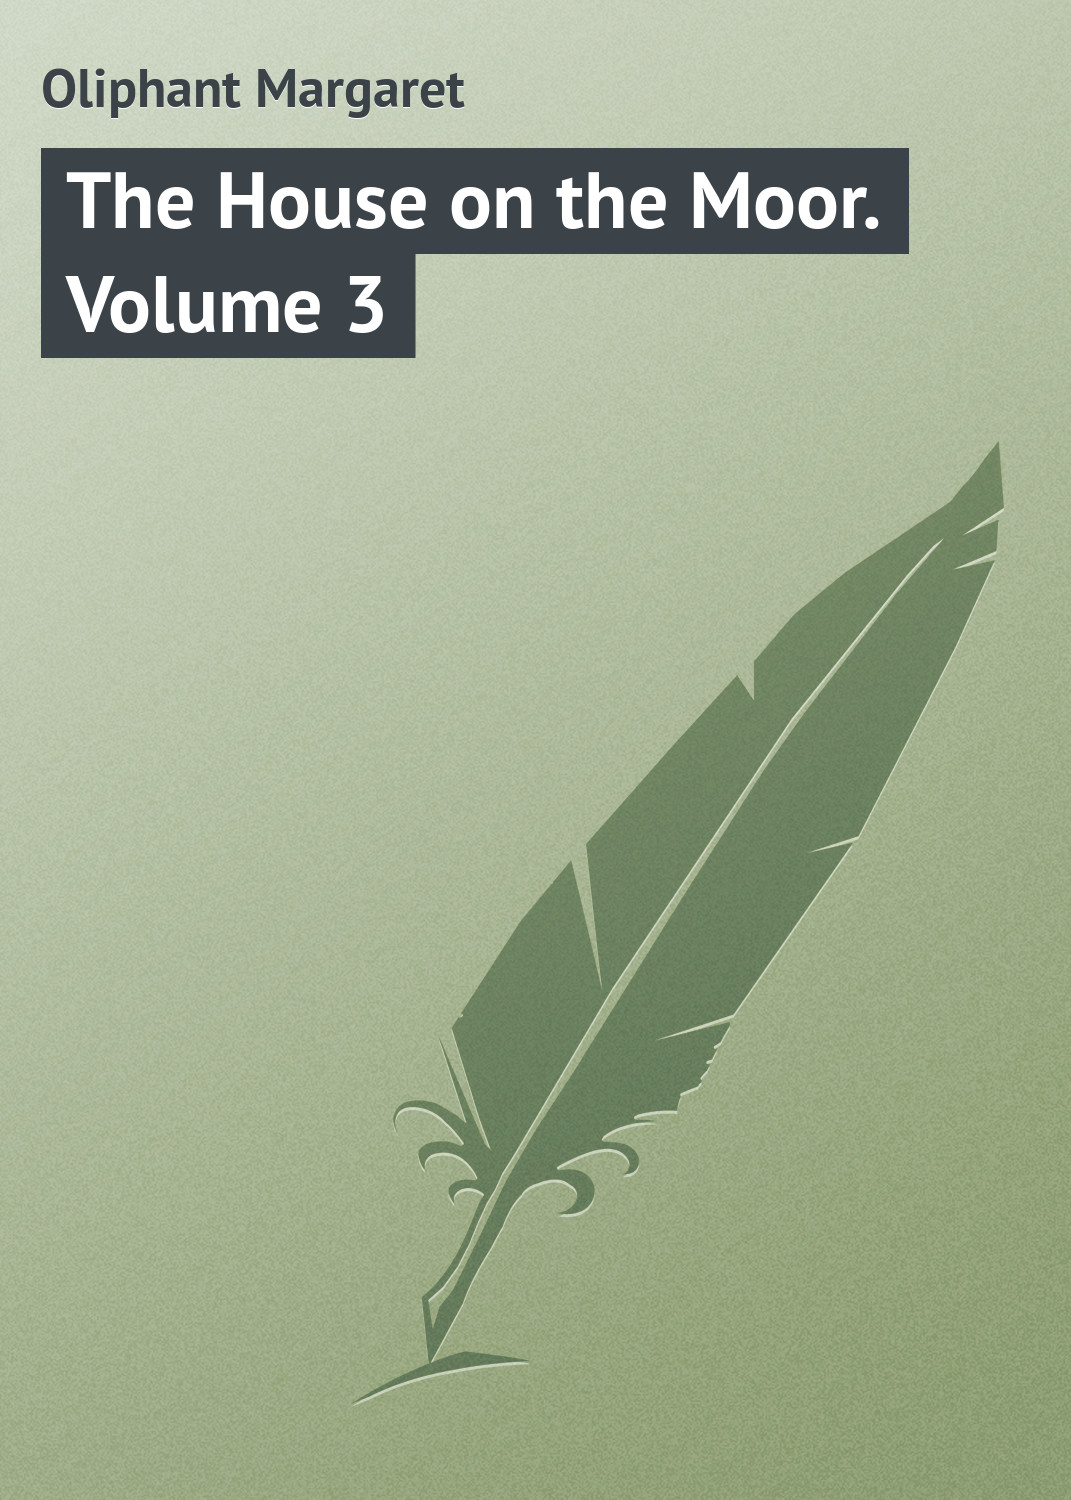 Книга The House on the Moor. Volume 3 из серии , созданная Margaret Oliphant, может относится к жанру Зарубежная классика, Иностранные языки. Стоимость электронной книги The House on the Moor. Volume 3 с идентификатором 23146411 составляет 5.99 руб.